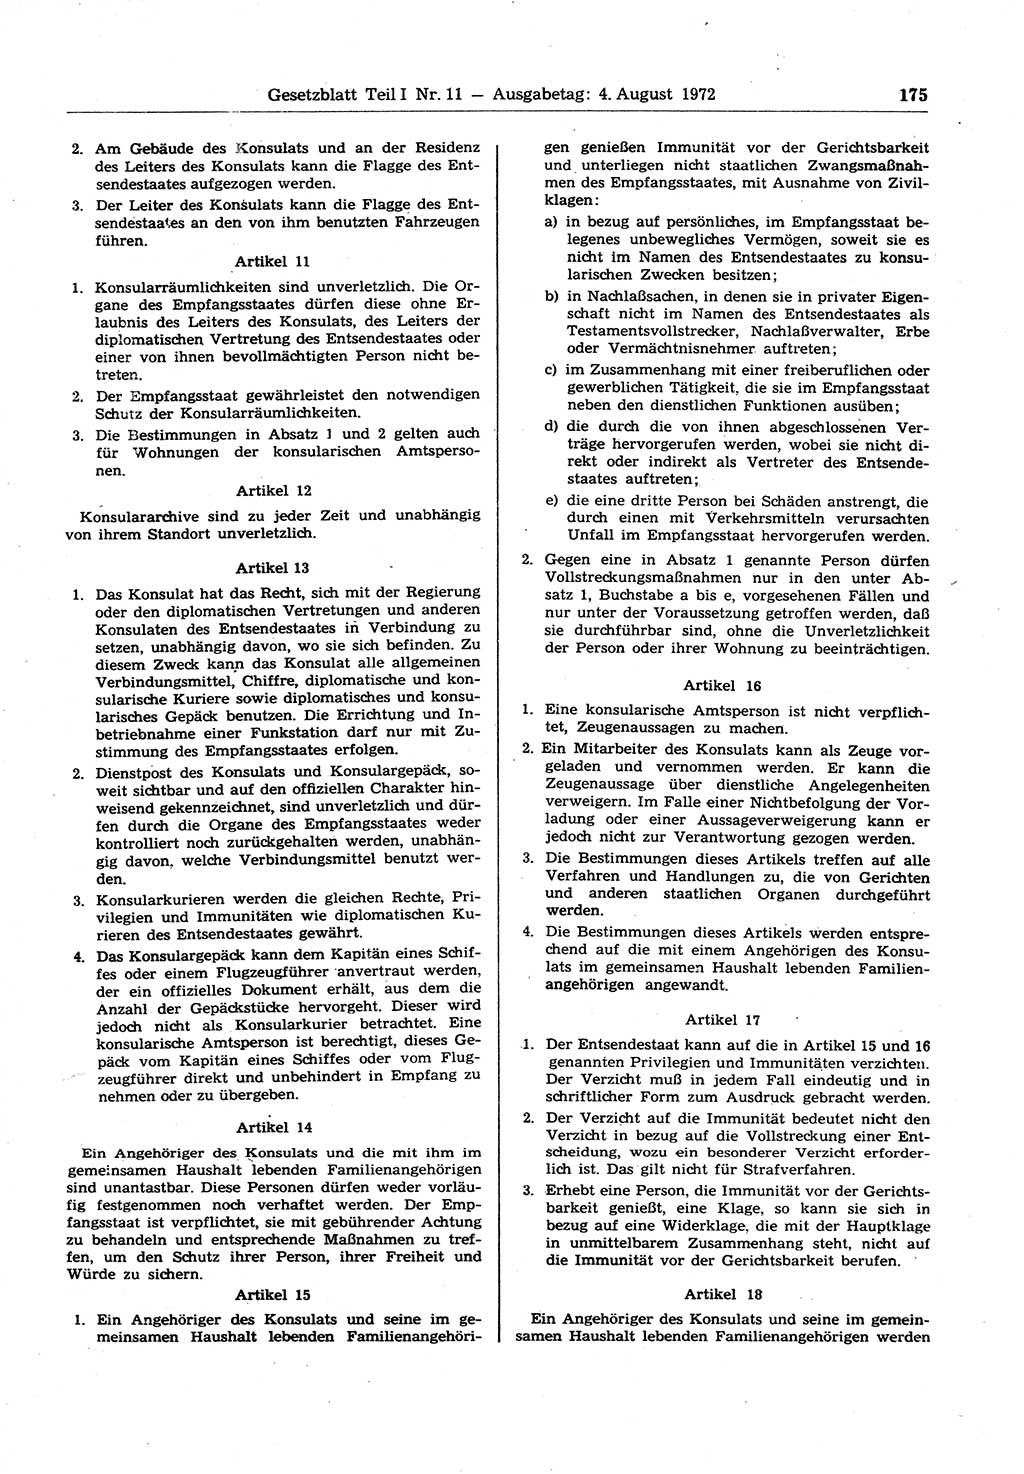 Gesetzblatt (GBl.) der Deutschen Demokratischen Republik (DDR) Teil Ⅰ 1972, Seite 175 (GBl. DDR Ⅰ 1972, S. 175)